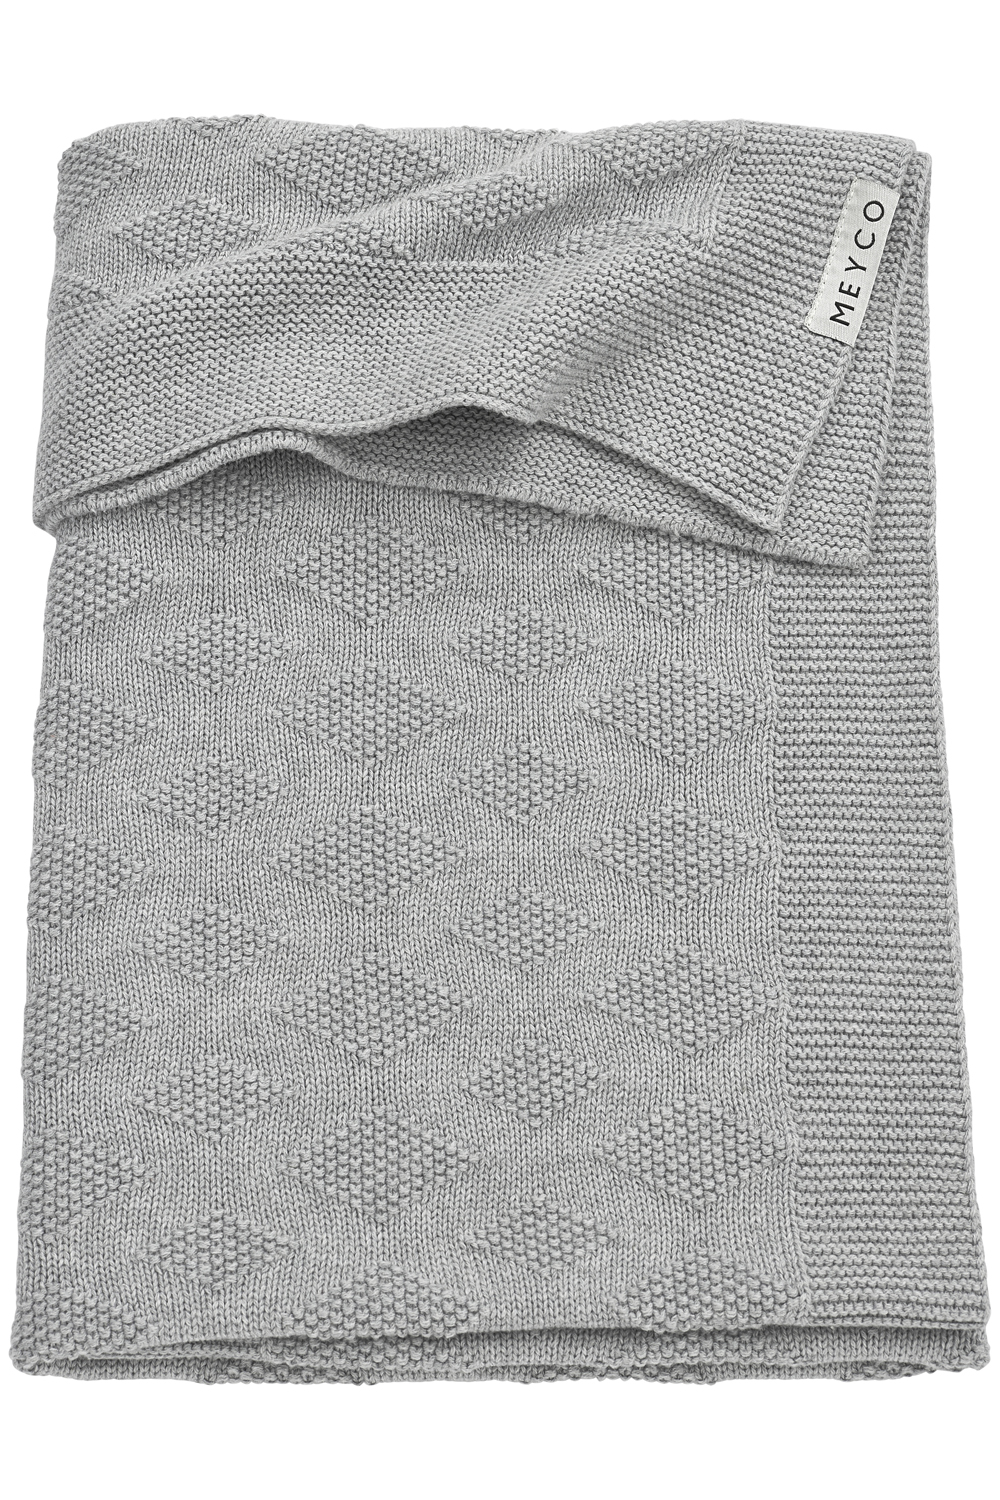 Cot bed blanket biological Diamond - grey melange - 100x150cm